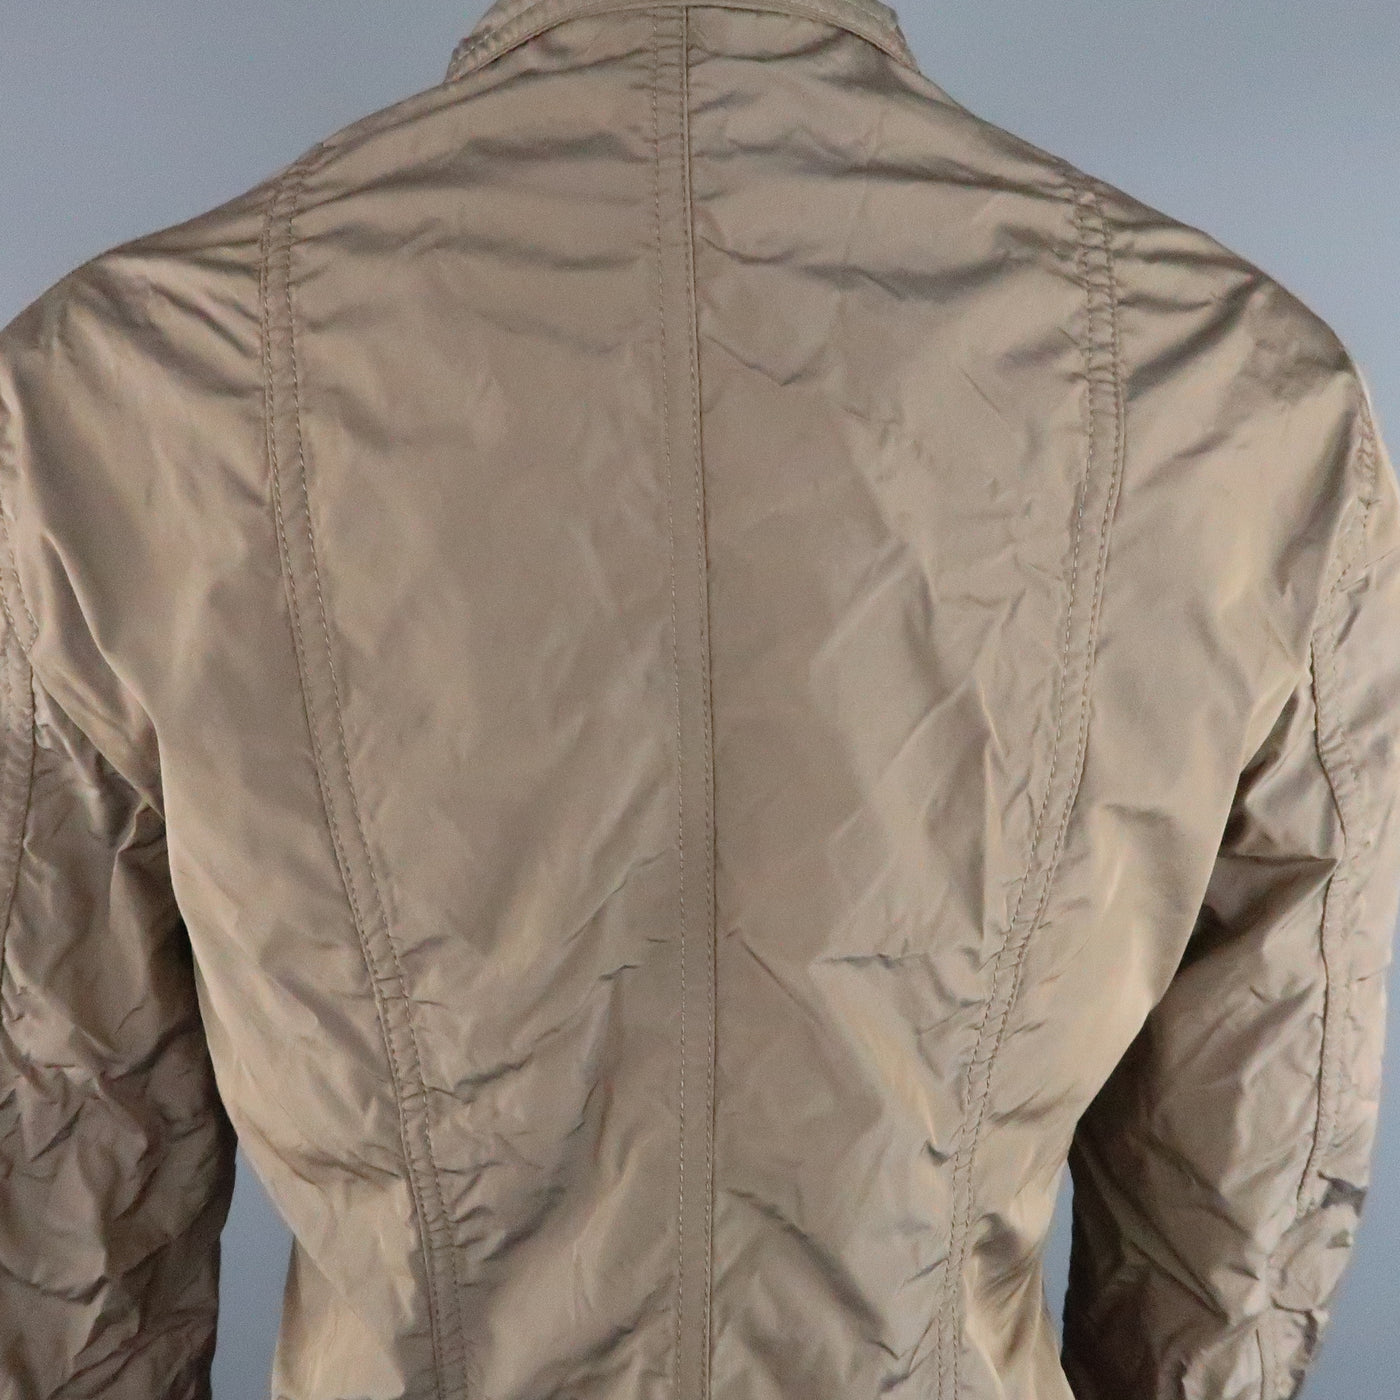 JIL SANDER Size 4 Taupe Iridescent Wrinkled Taffeta Jacket